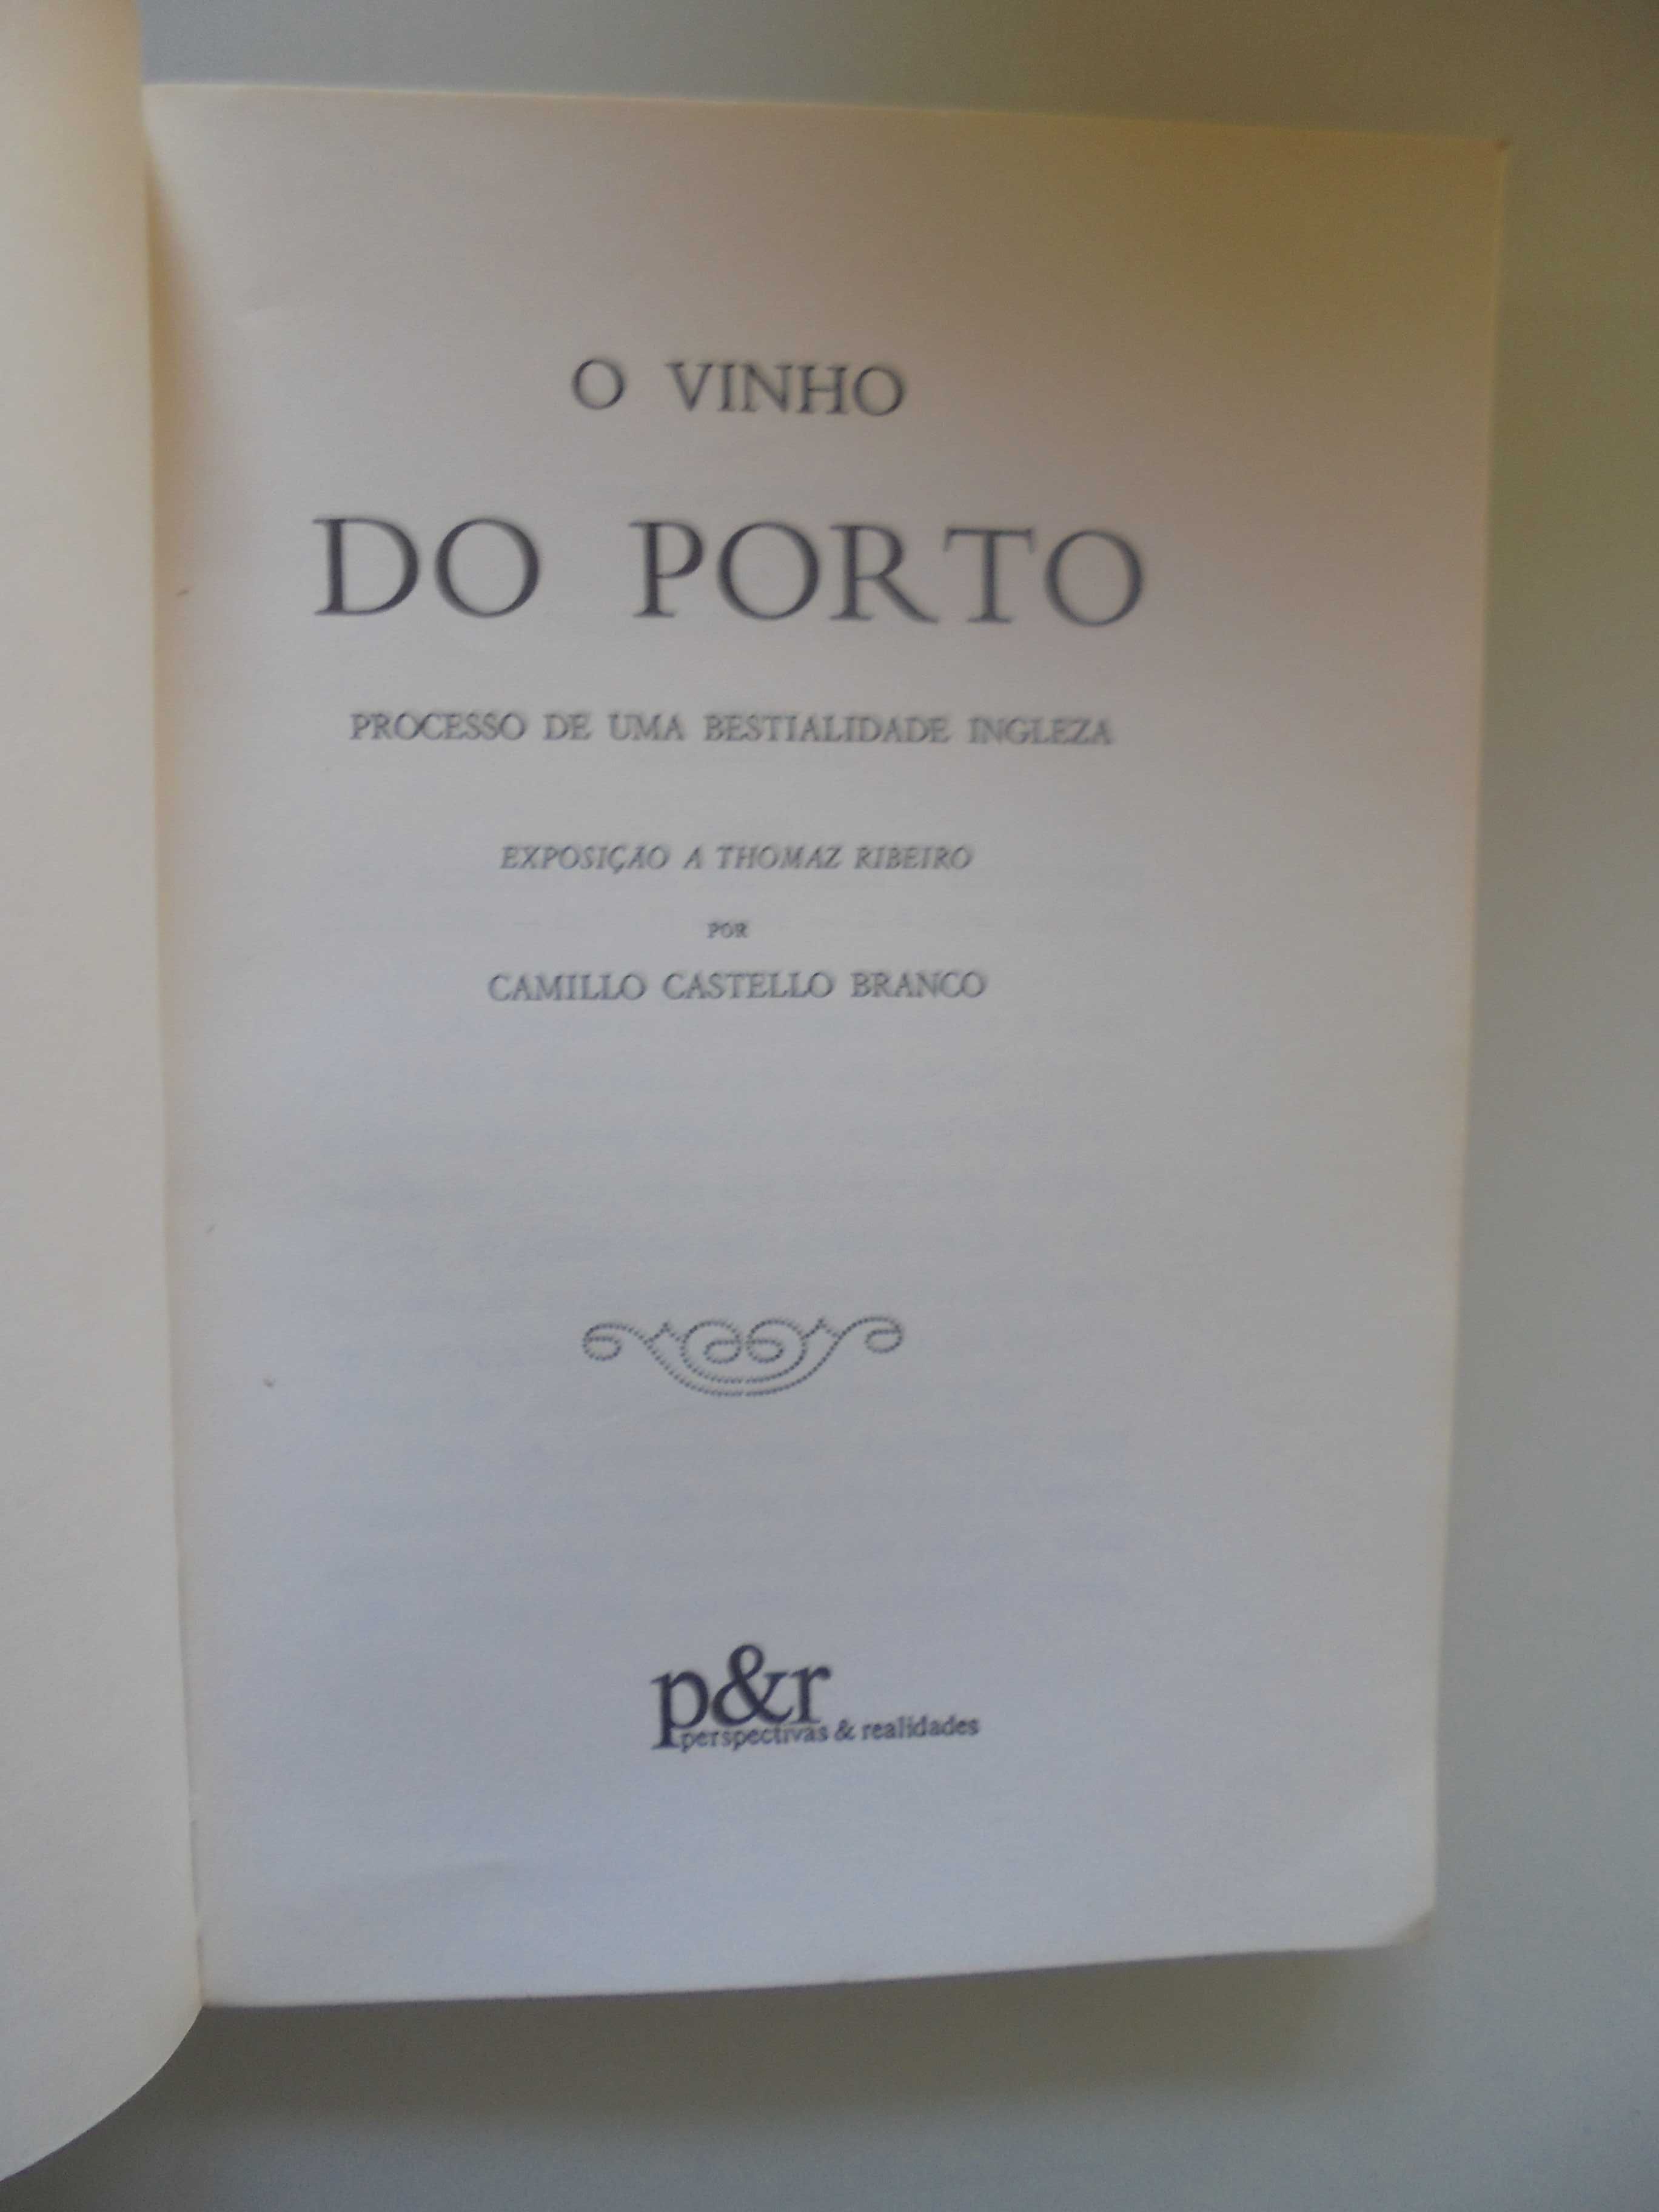 Branco (Camilo Castelo),Vinho do Porto Processo  Bestialidade Inglesa